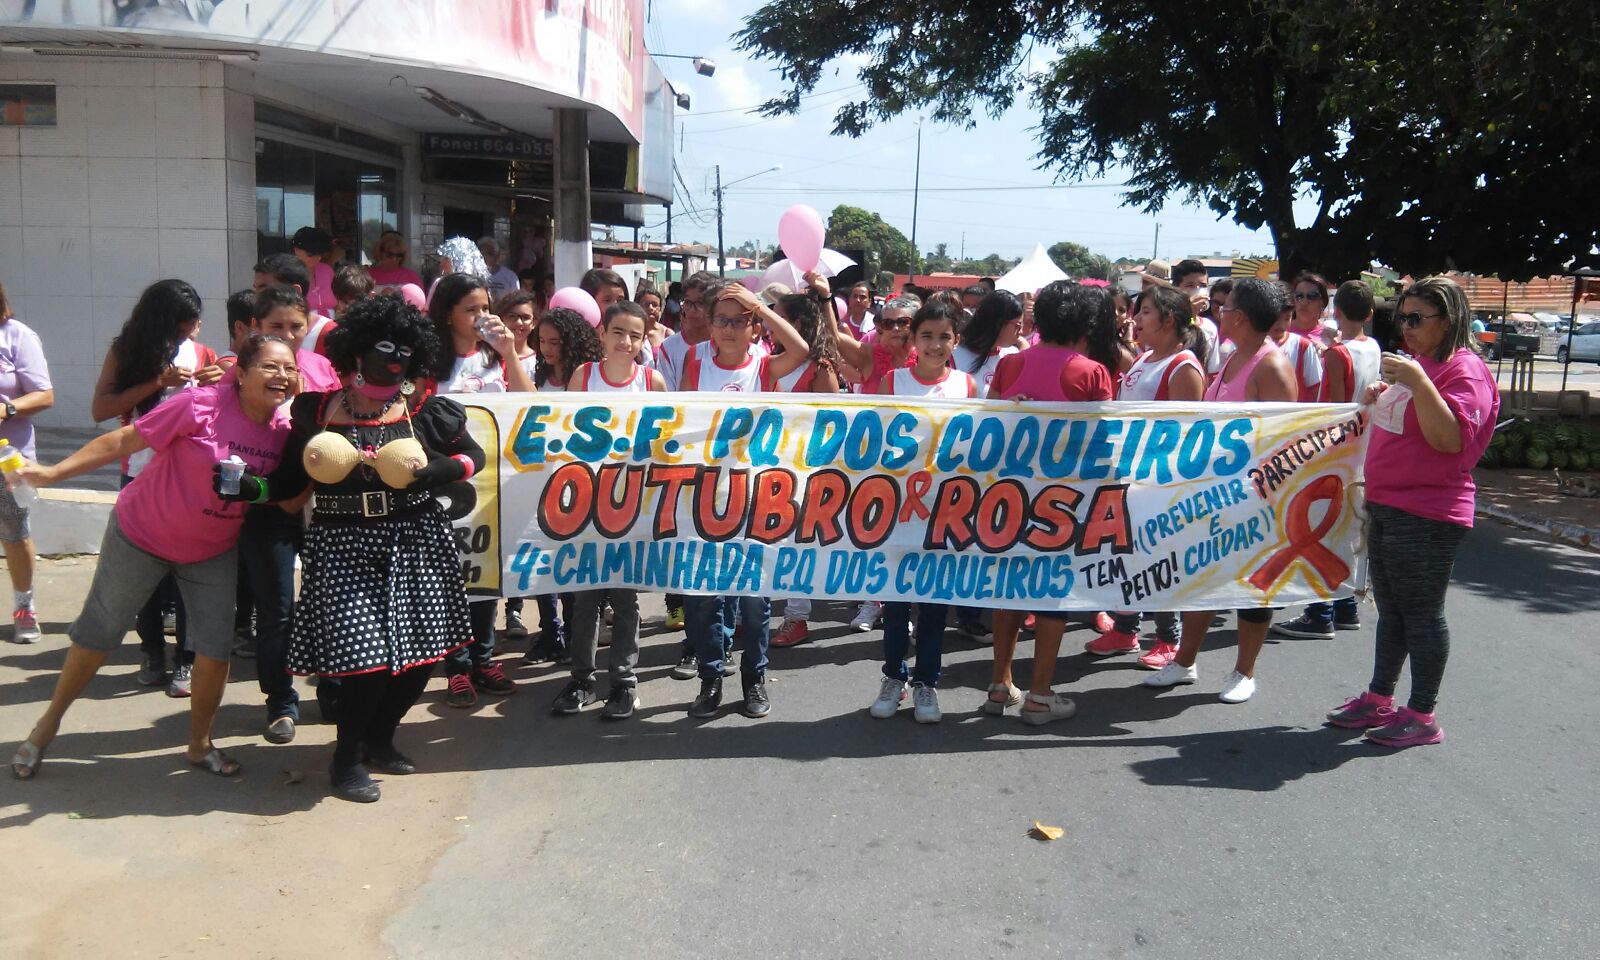 Caminhada do Outubro Rosa leva centenas de mulheres às ruas do Parque dos Coqueiros